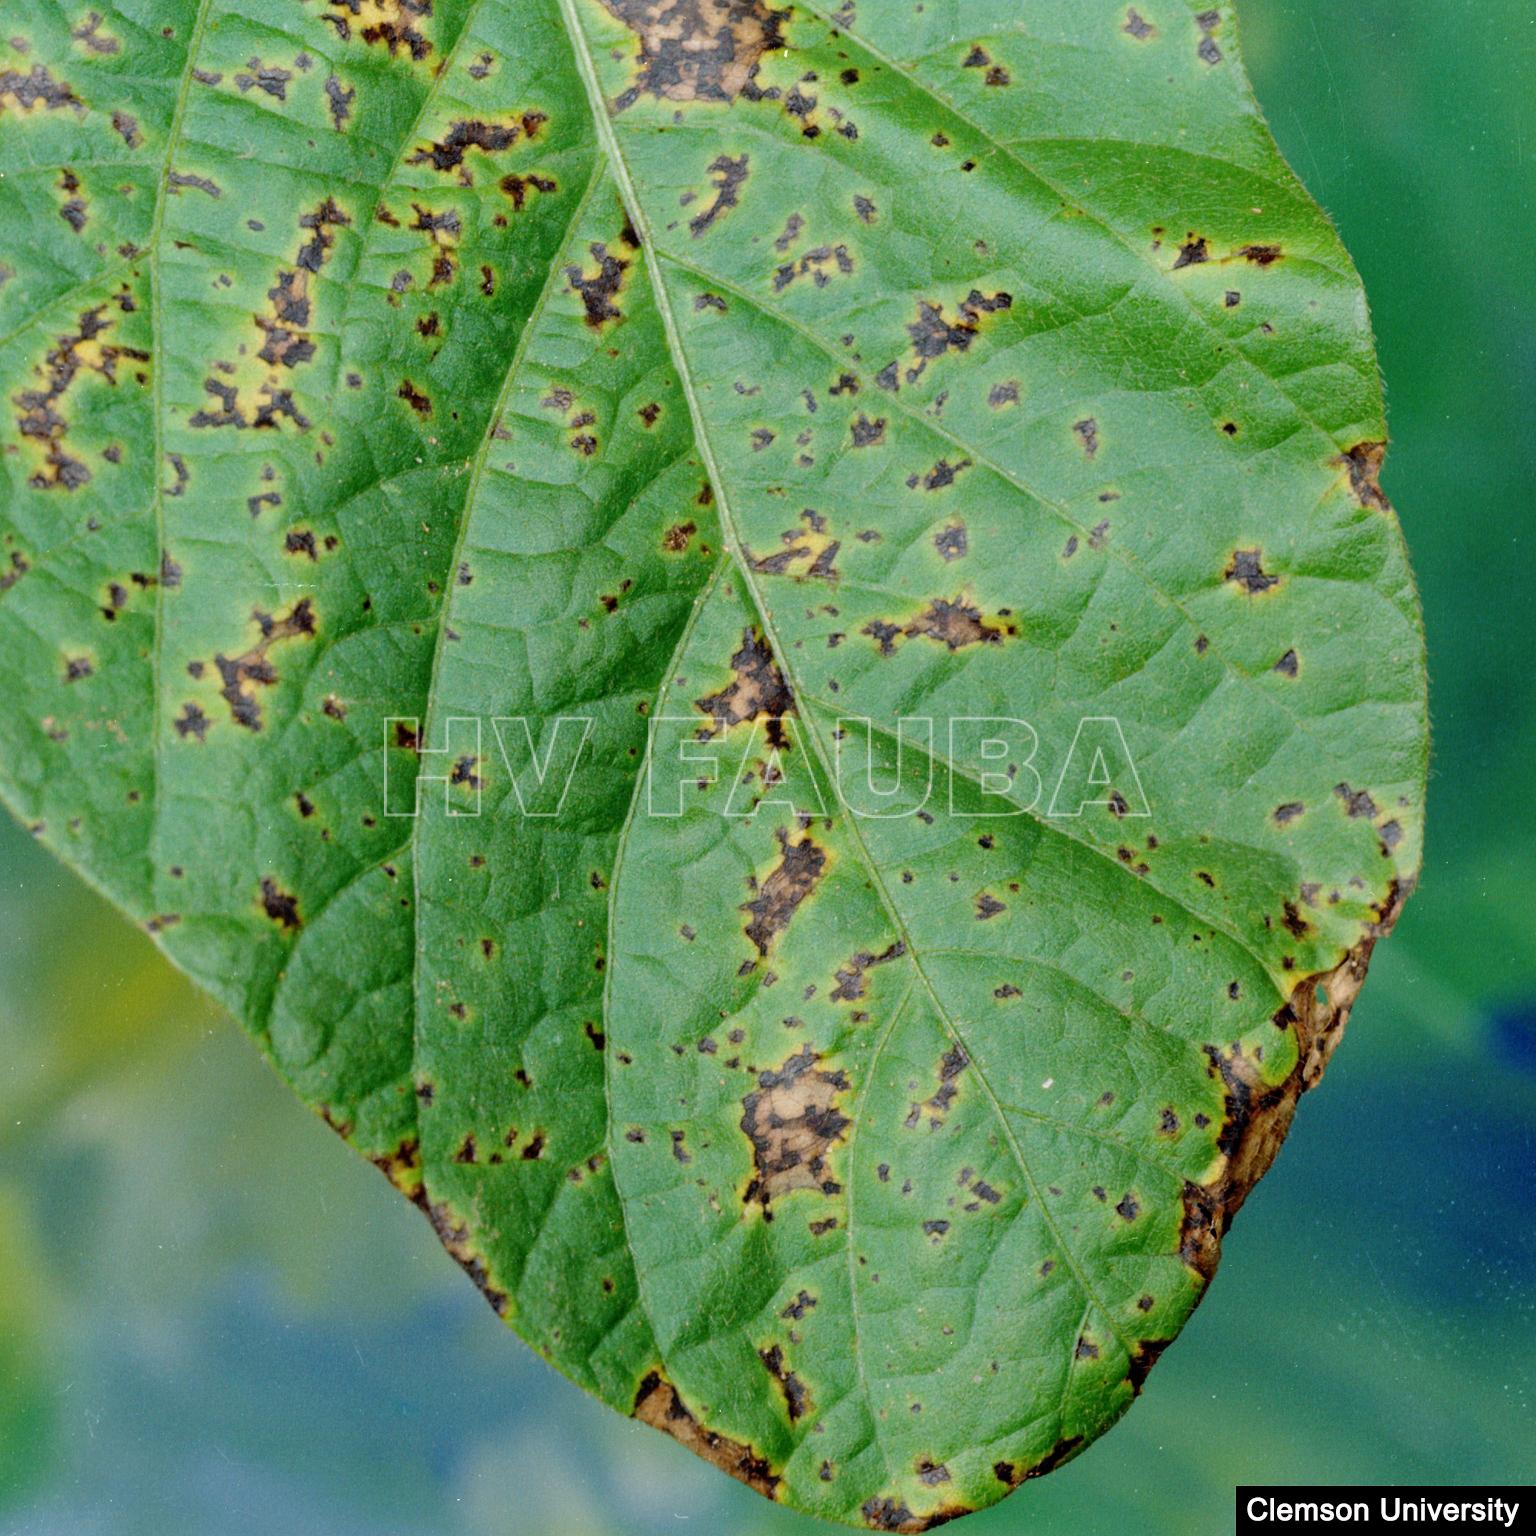 Tizón bacteriano de la soja causado por Pseudomonas savastanoi pv. glycinea. Fuente: Clemson University.